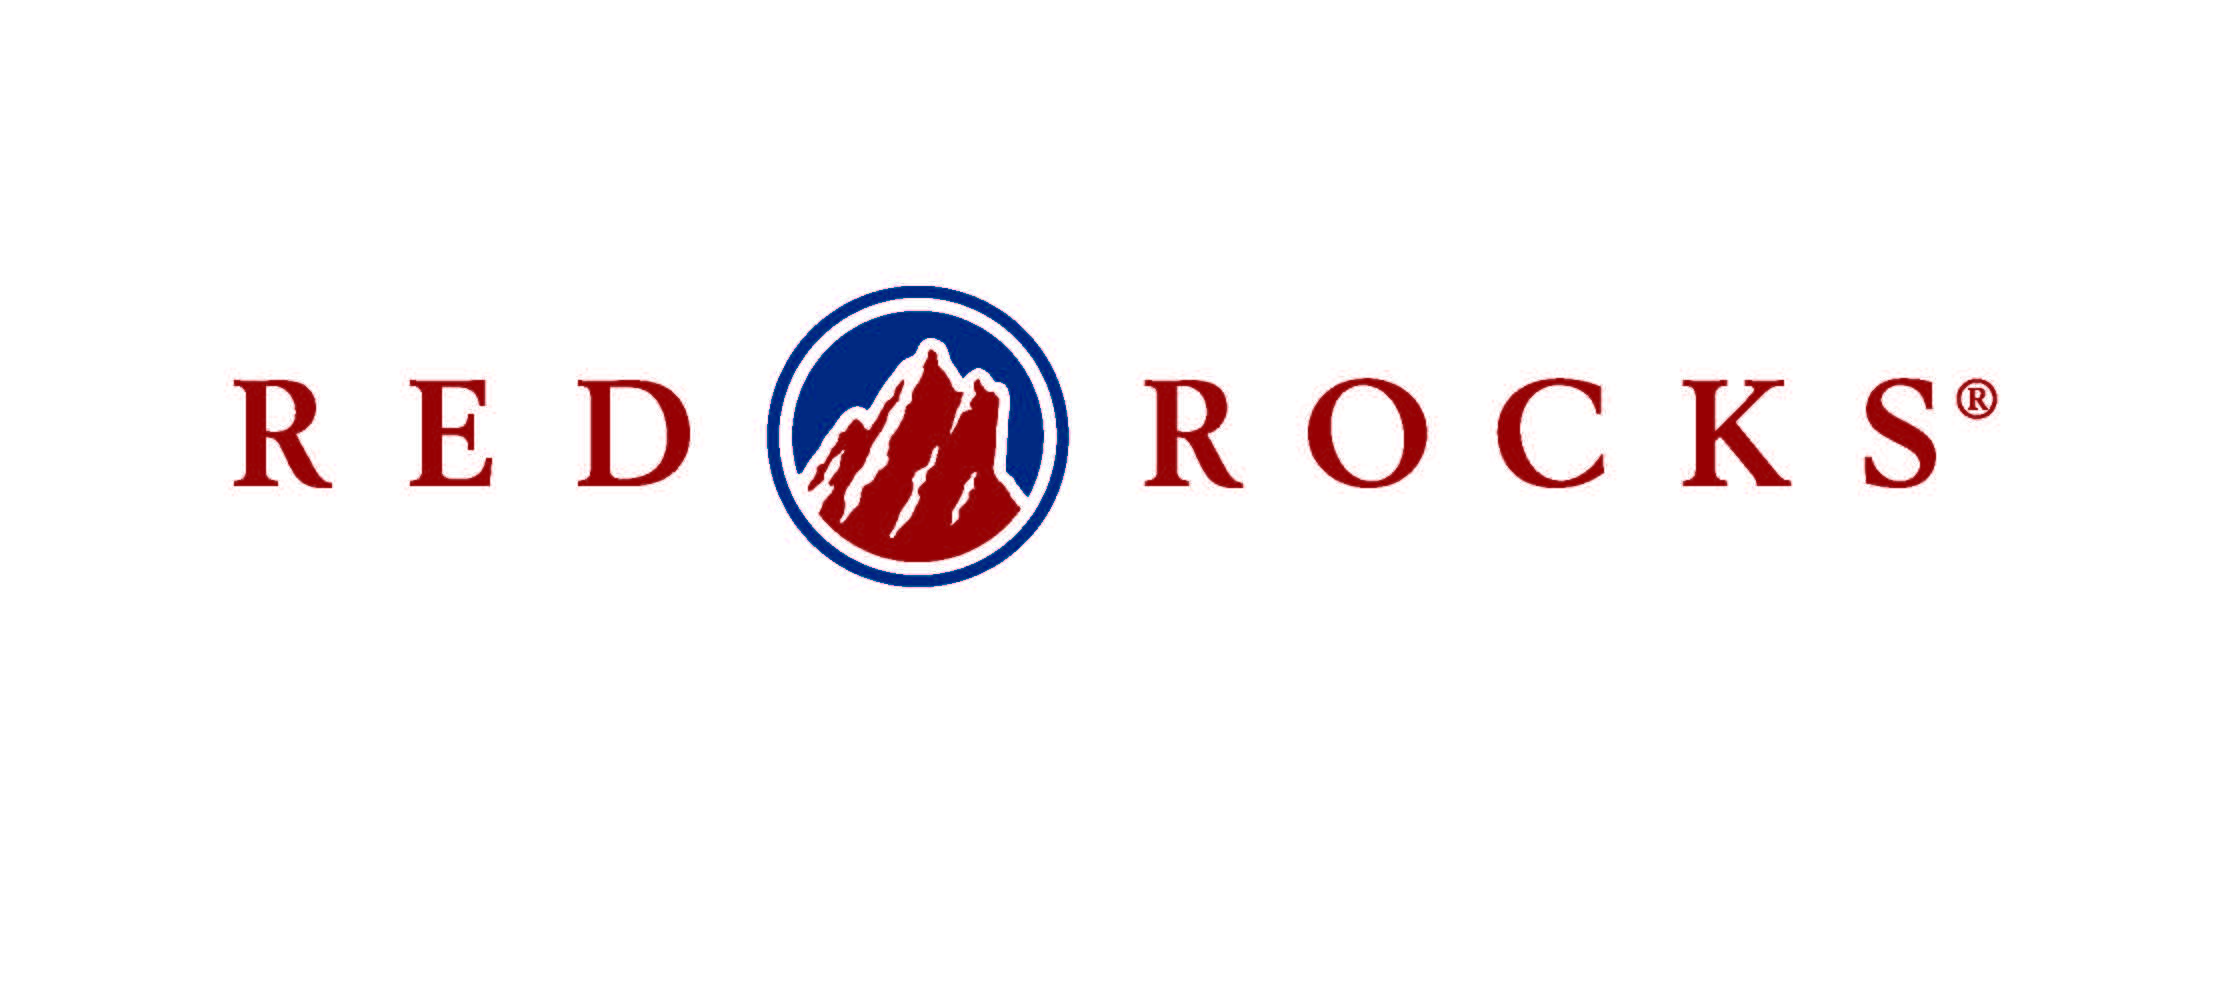 Red Rocks Logo - Red rocks amphitheater Logos